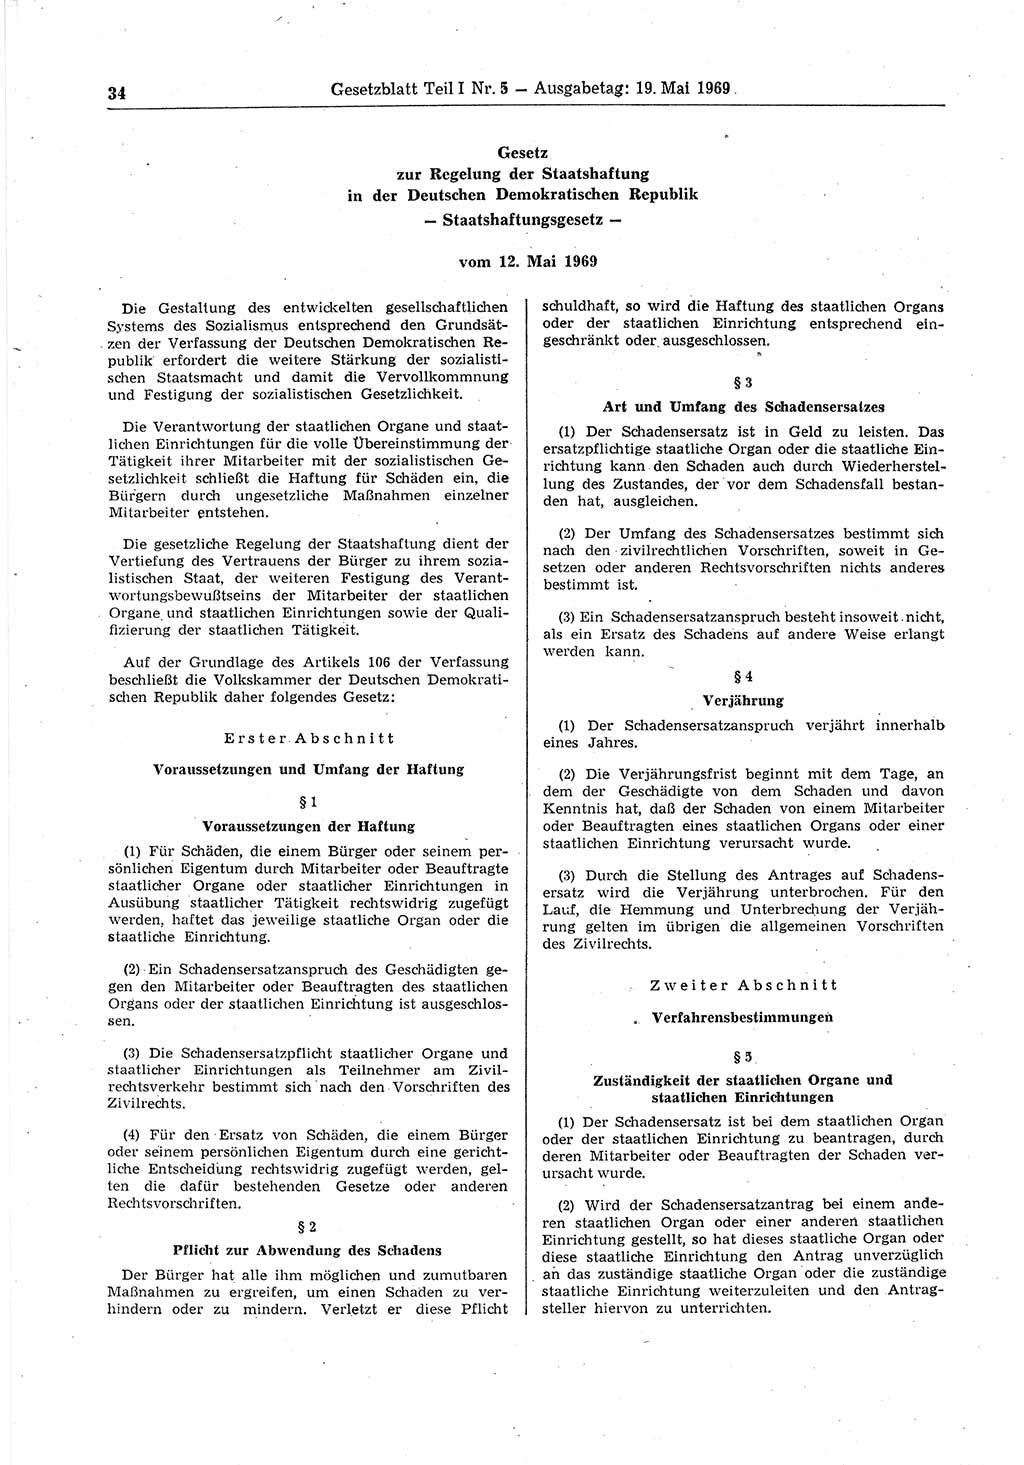 Gesetzblatt (GBl.) der Deutschen Demokratischen Republik (DDR) Teil Ⅰ 1969, Seite 34 (GBl. DDR Ⅰ 1969, S. 34)